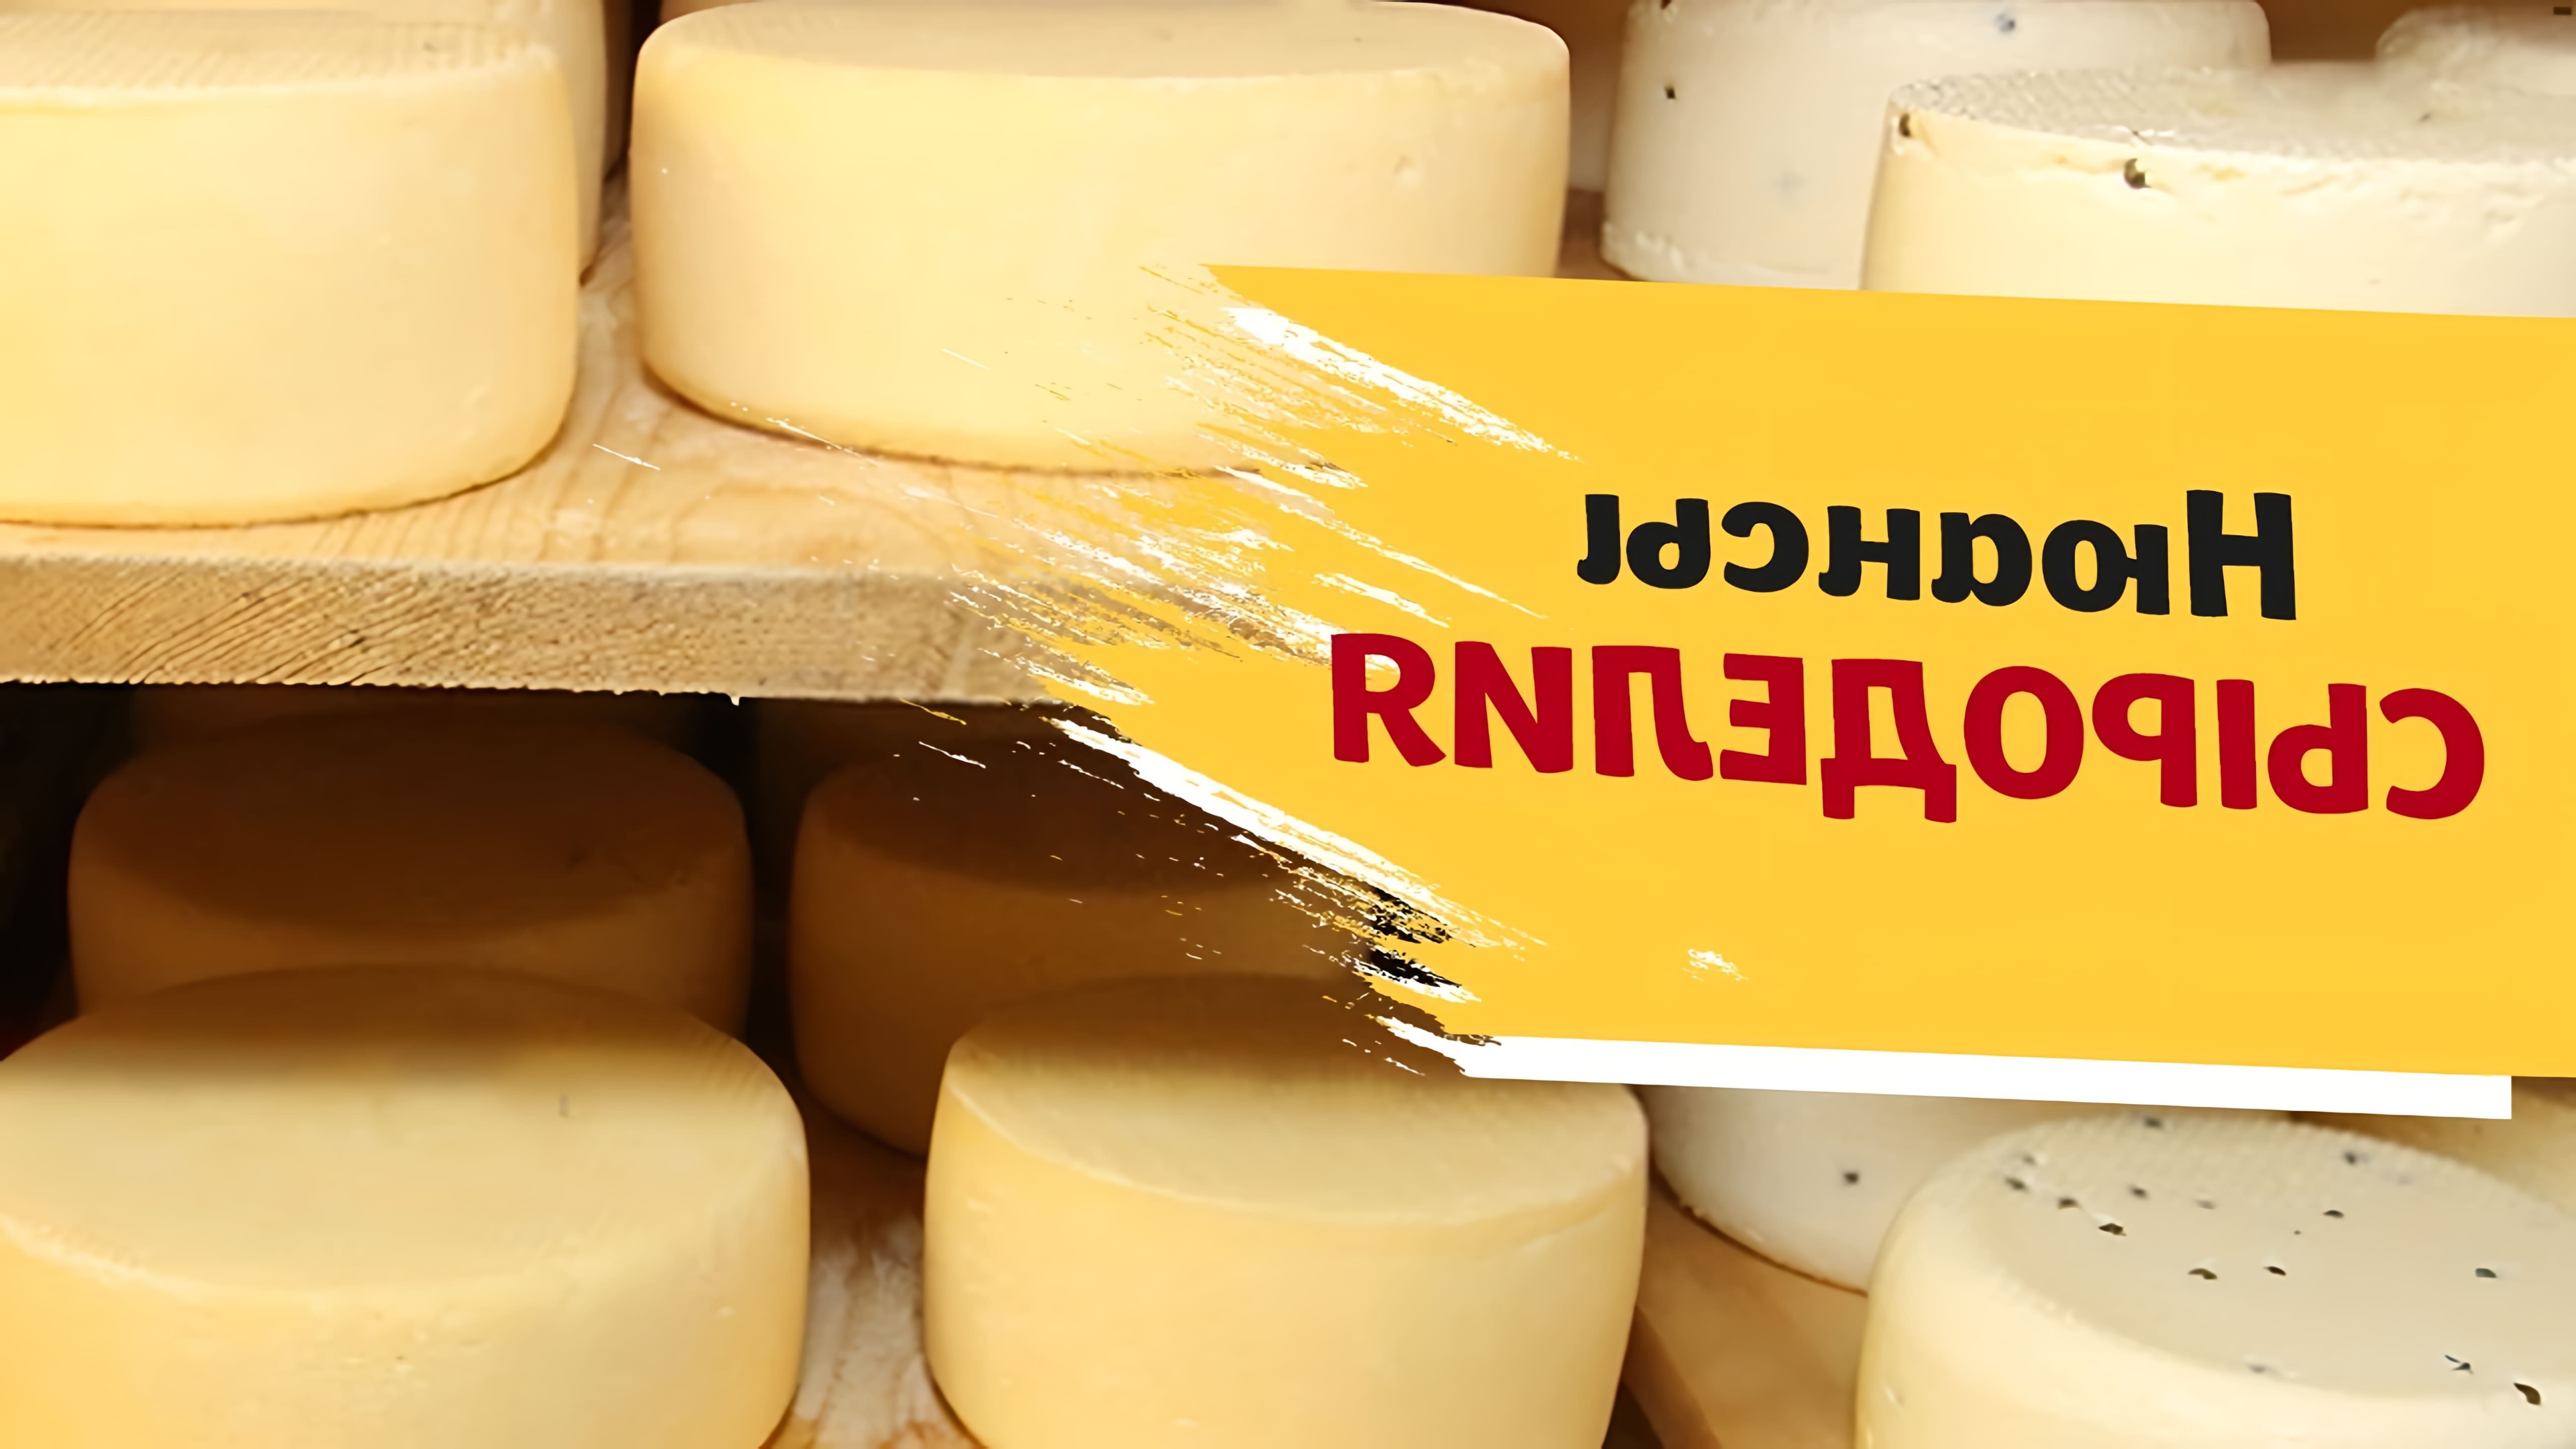 В данном видео рассматриваются различные проблемы, которые могут возникнуть при изготовлении сыра